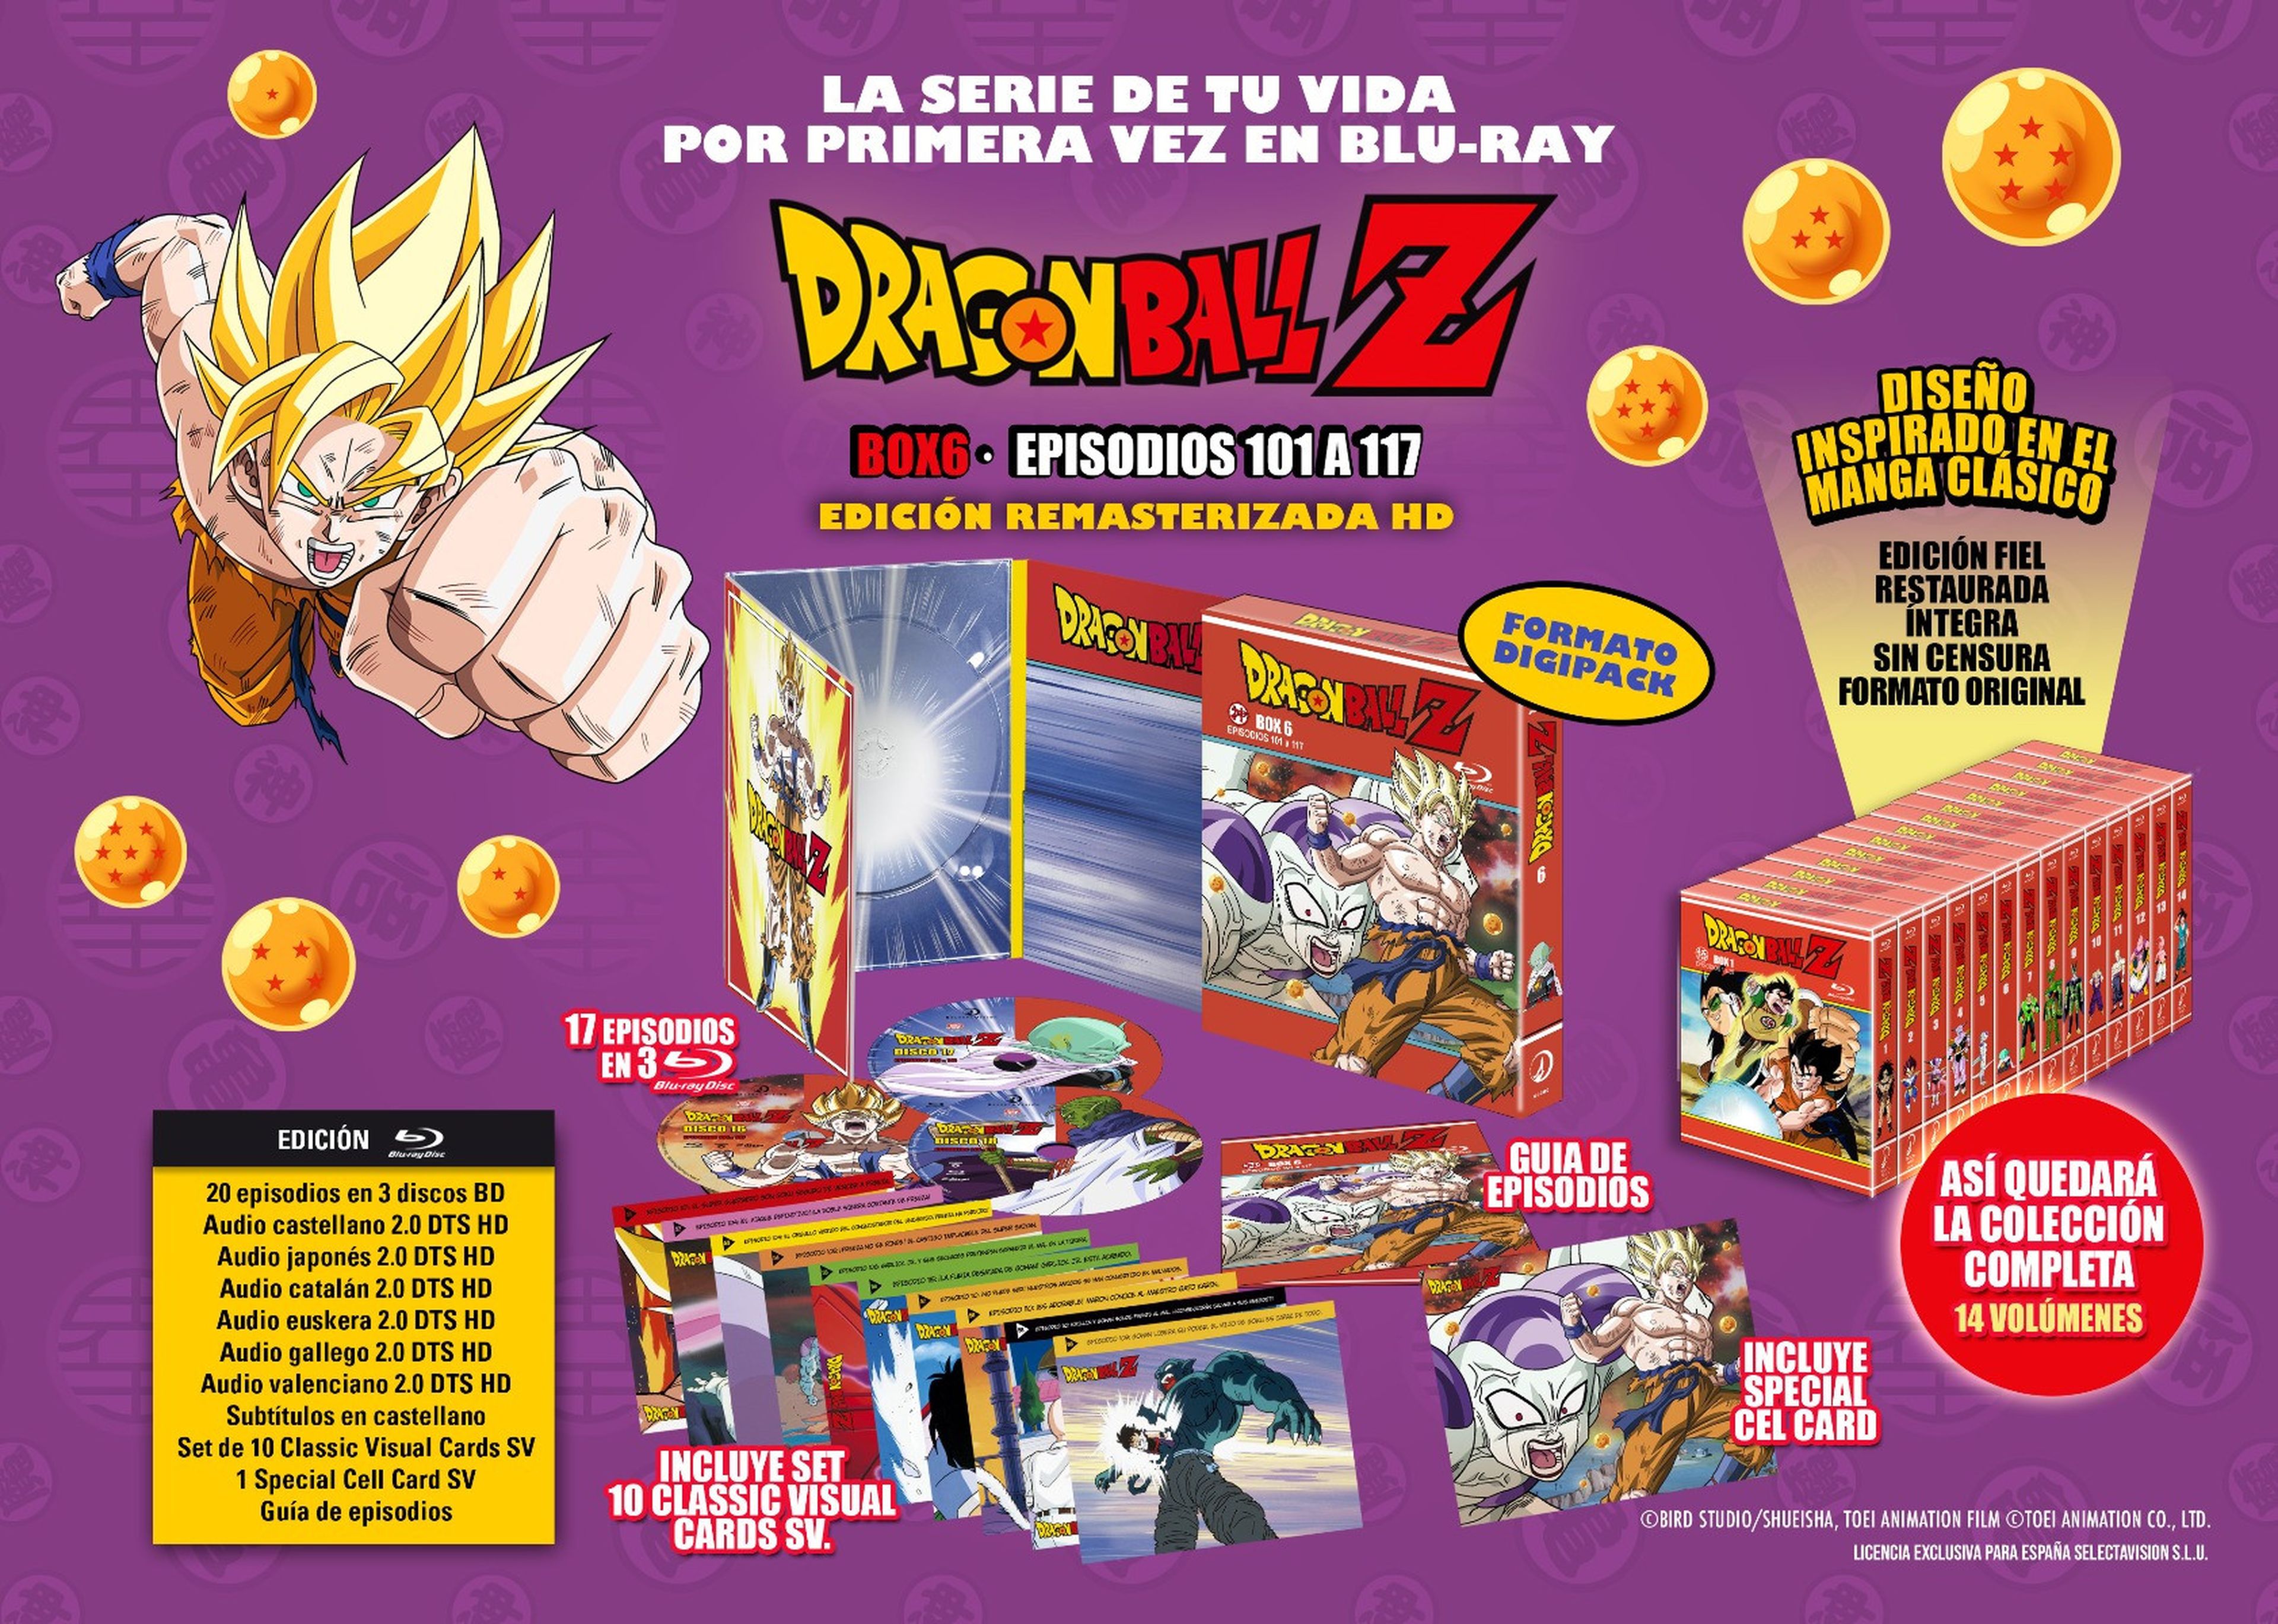 Dragon Ball Z - Portada y fecha de lanzamiento del Box 6 de la serie en Blu-ray con el regreso de Garlick Jr.